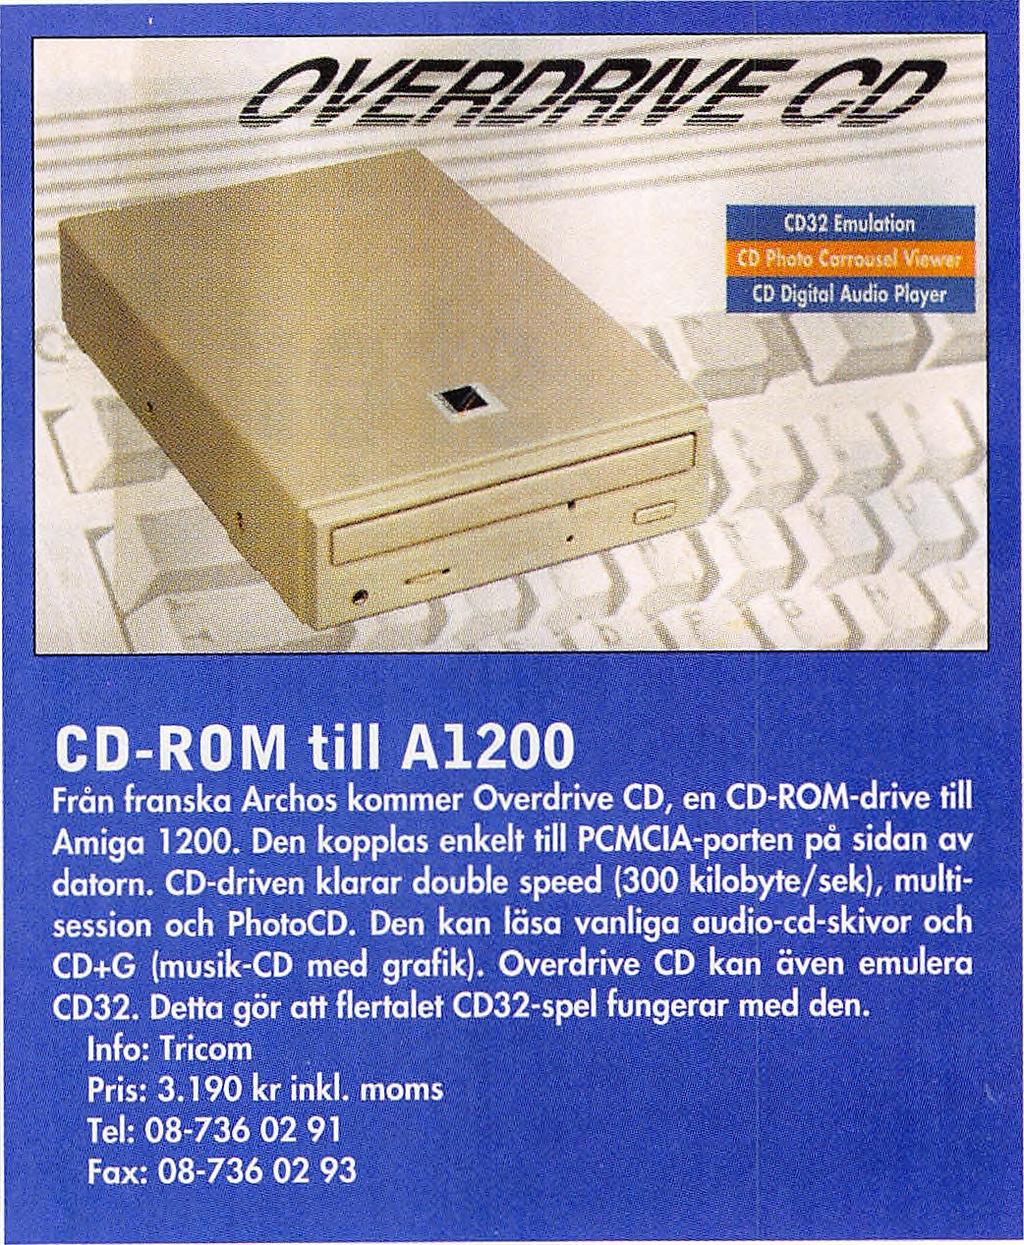 Det tyska företaget HK-Computer erbjuder en kombination av SCSI-kontroller och två megabyte minnesexpansion. Pris: ca 1.200 kr inkl.